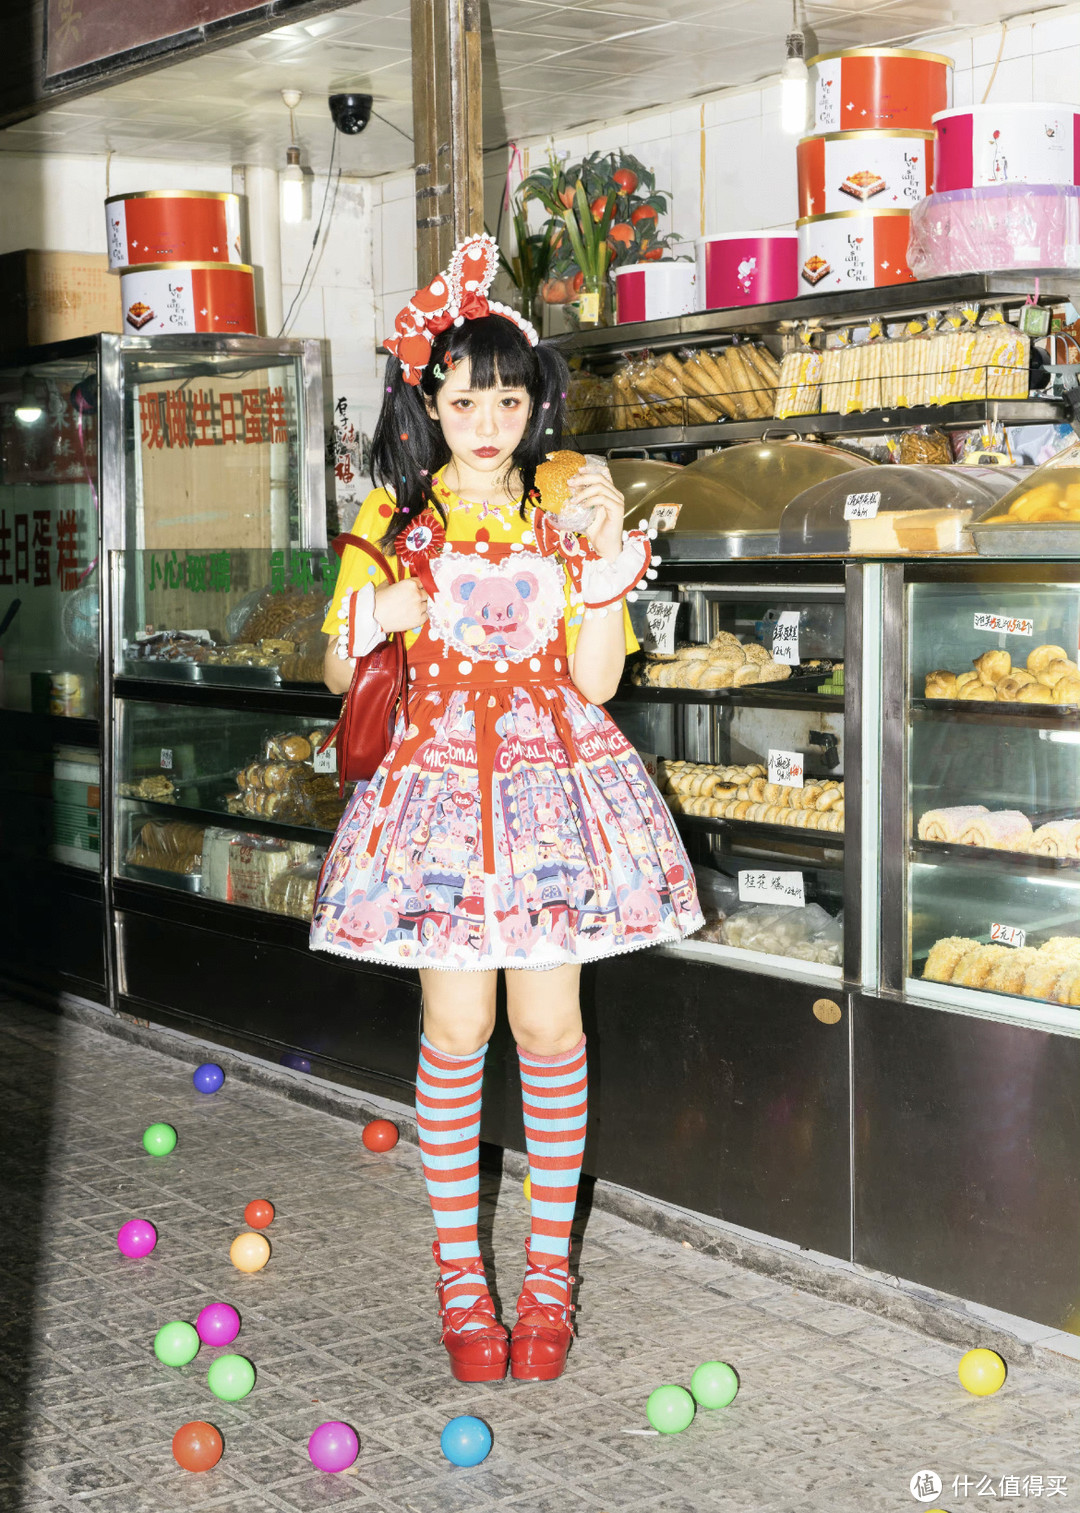 张扬又浮夸的呲甜lolita是亚文化的一种吗？